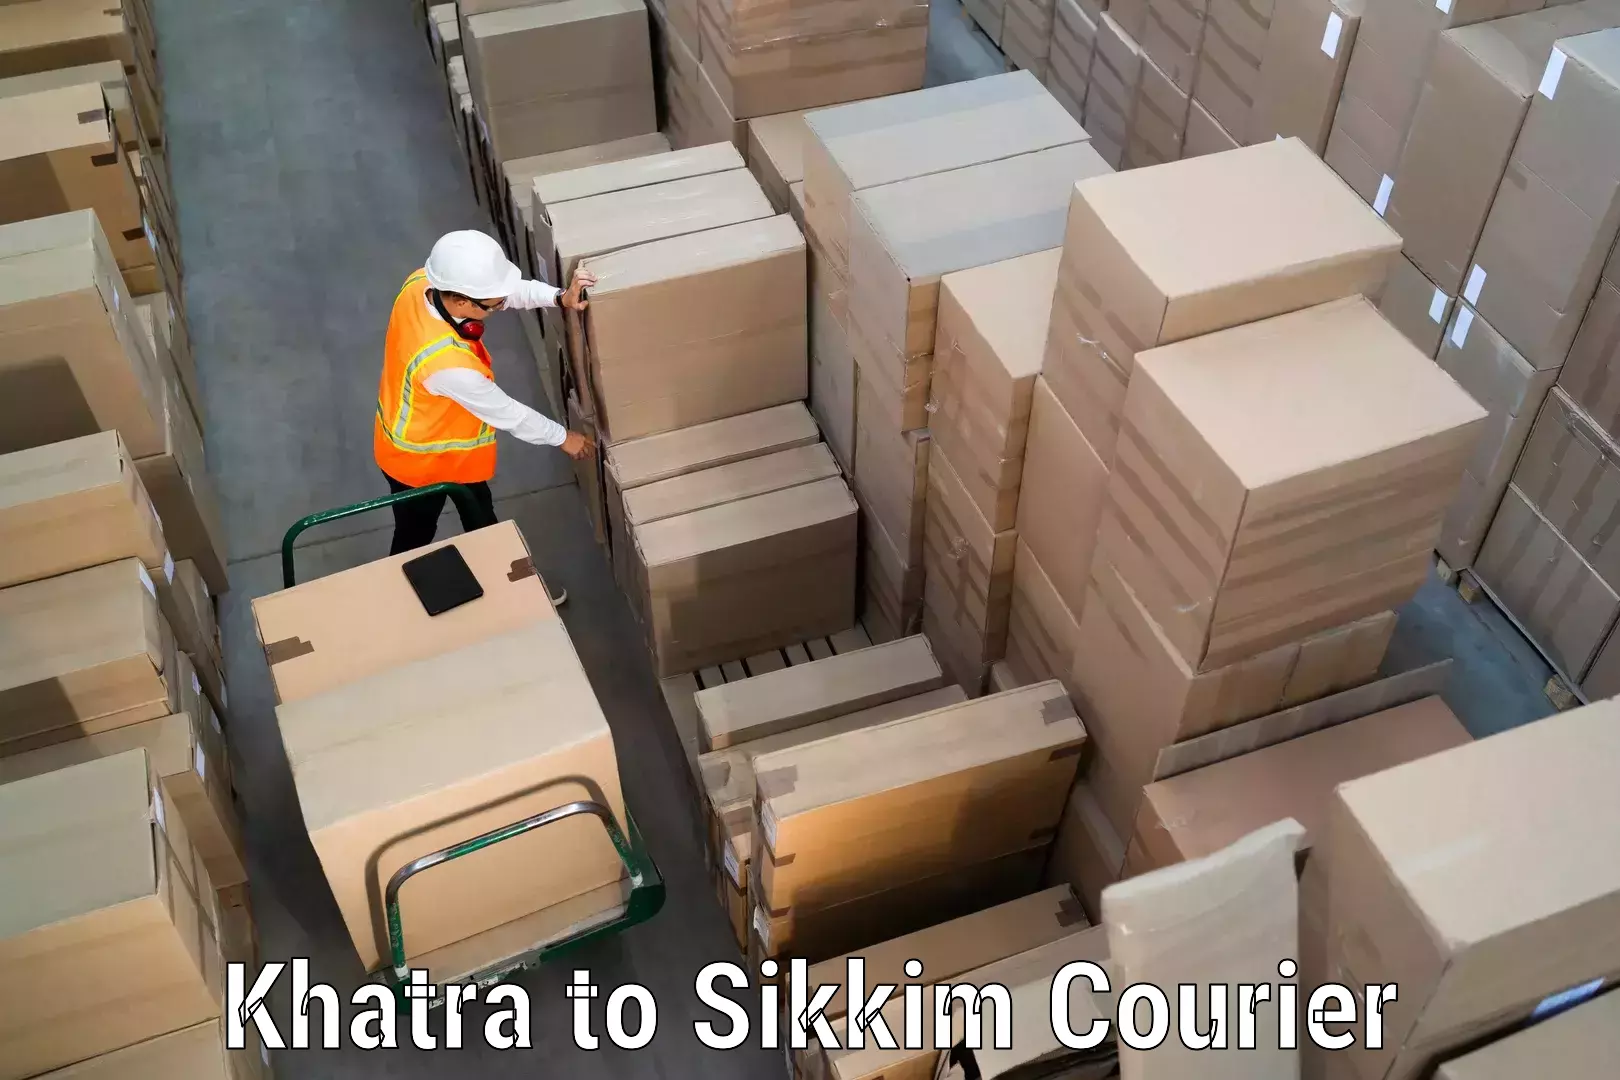 Reliable parcel services Khatra to East Sikkim